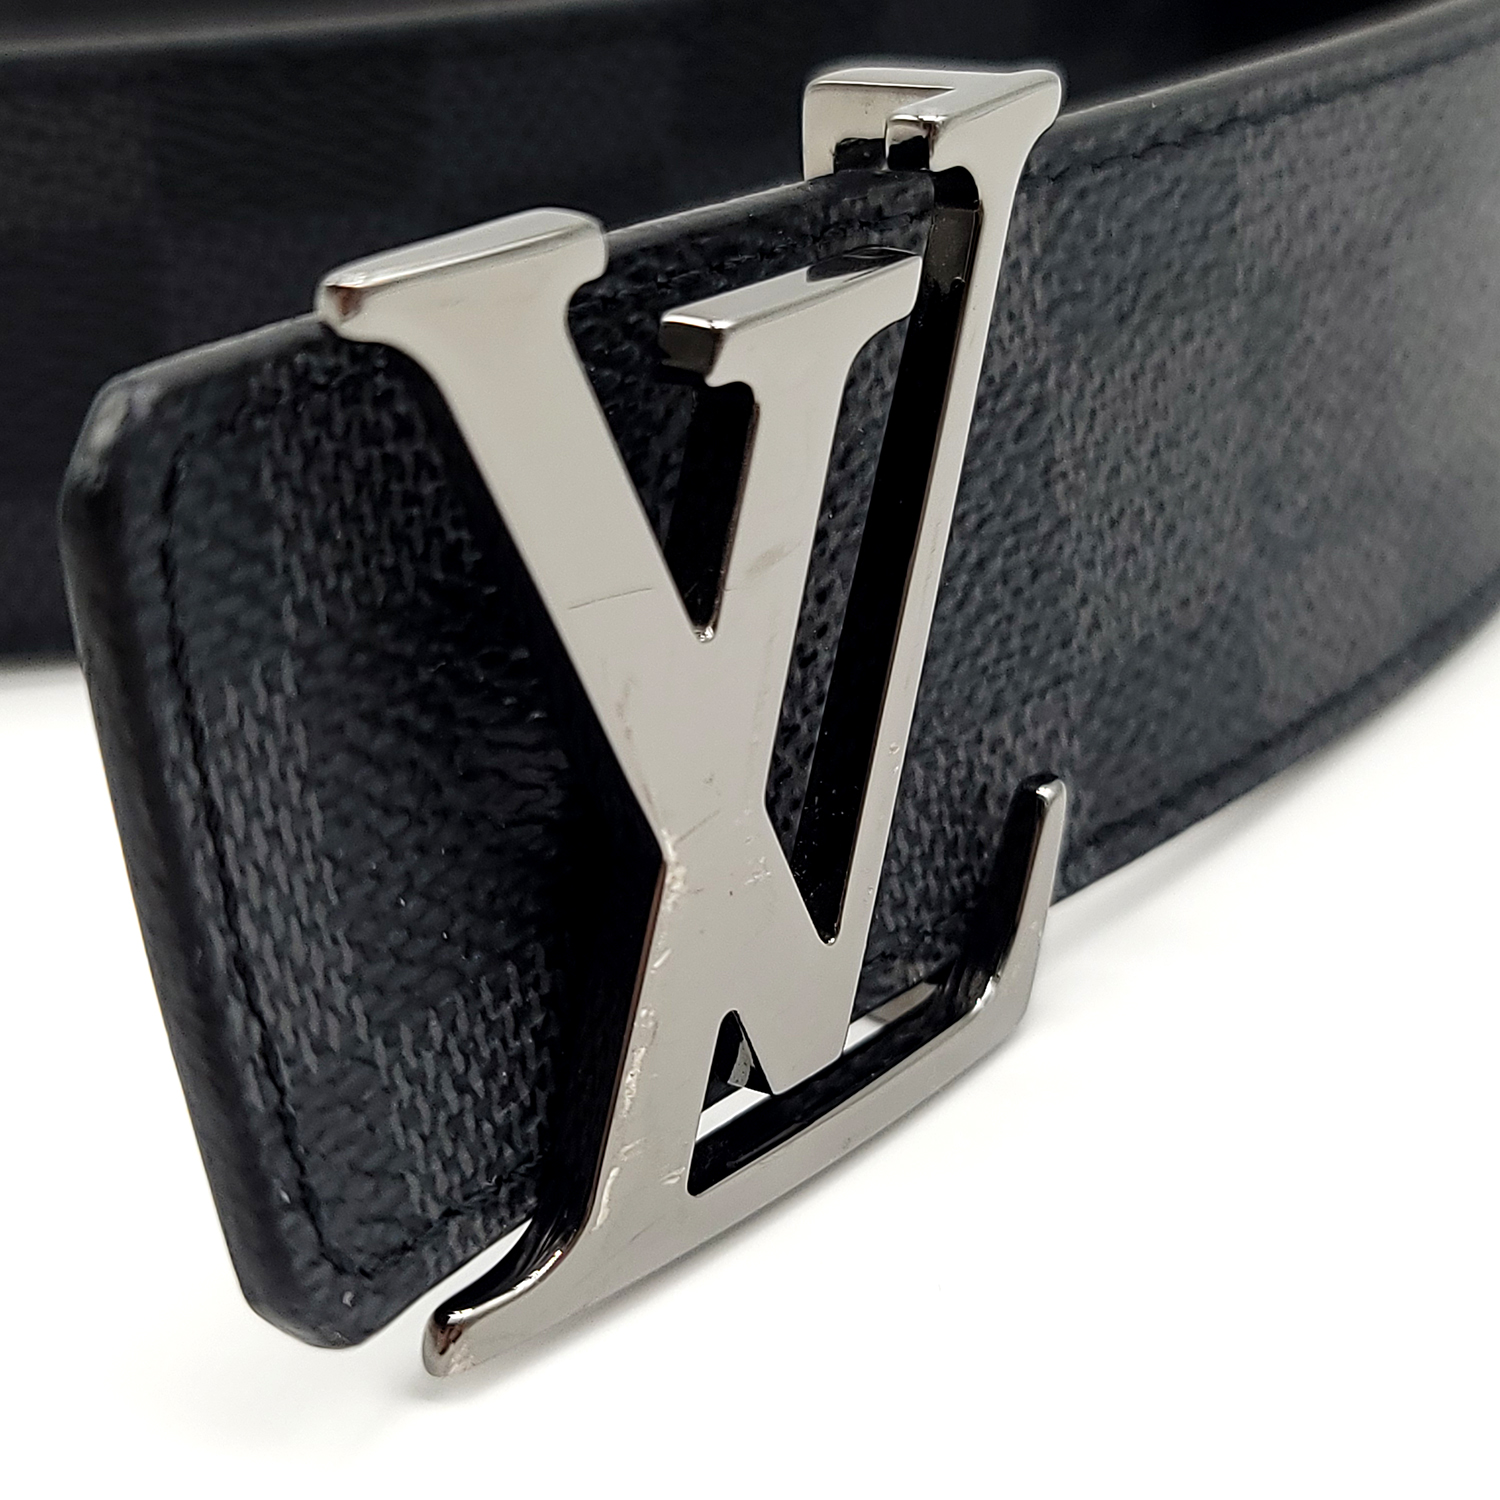 LV Initiales 40mm Reversible Belt Damier Graphite Canvas - Men -  Accessories